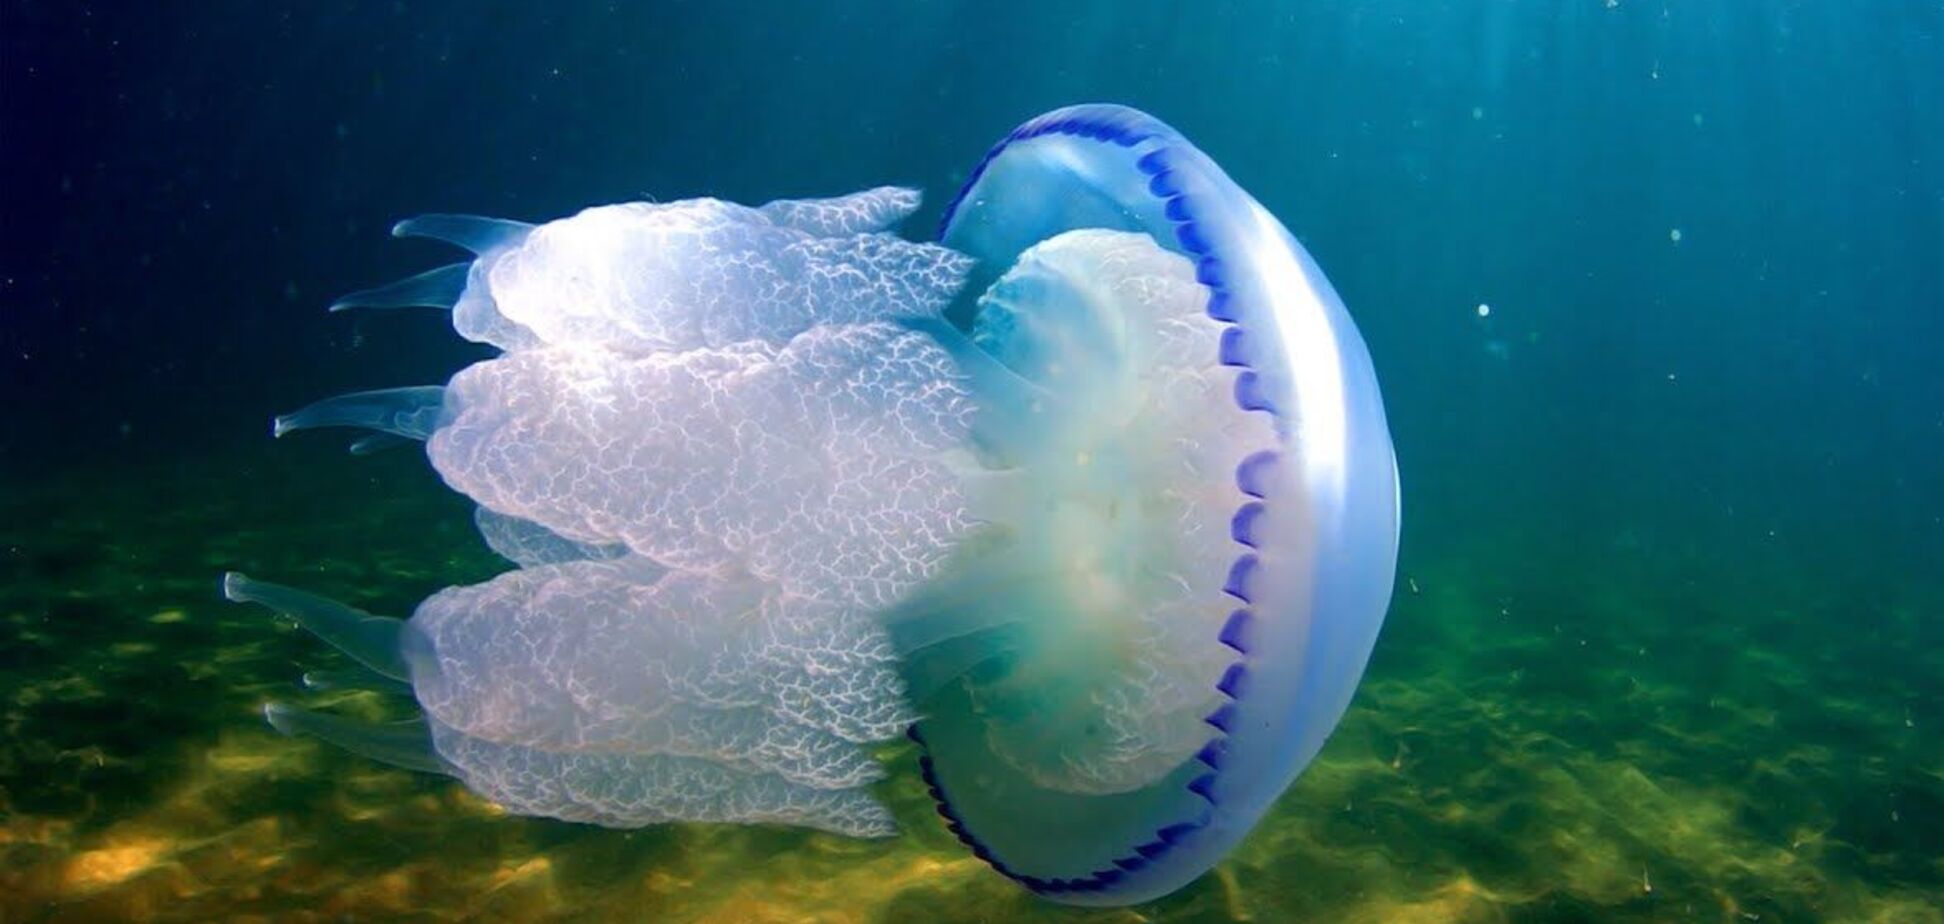 Медузы заполонили море в Приморске (фото: Фокус)